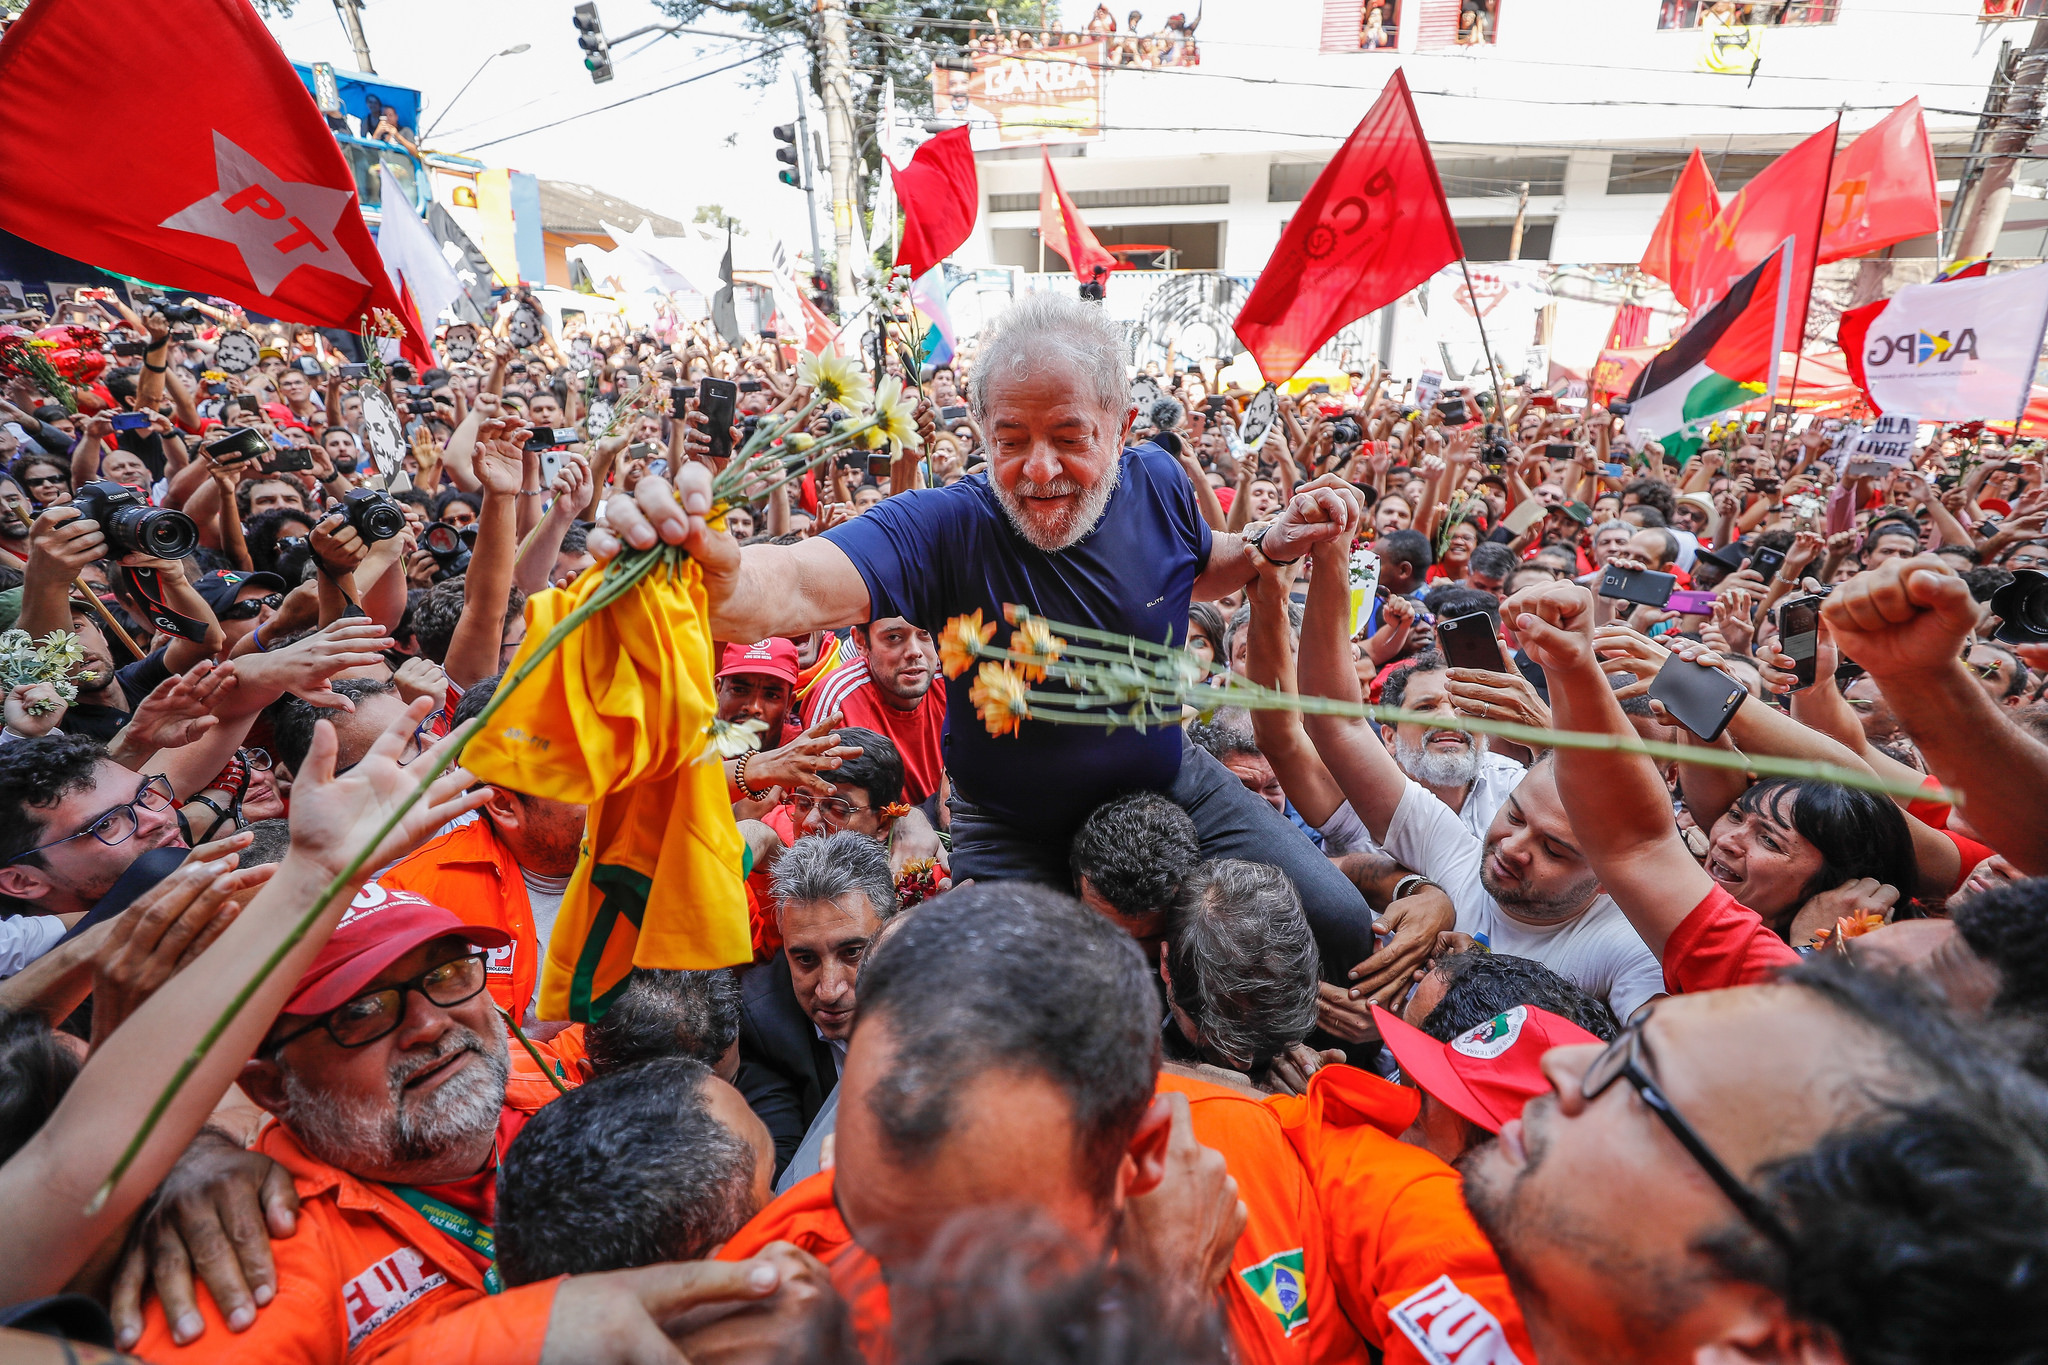 60 deputados incorporam “Lula” ao nome parlamentar